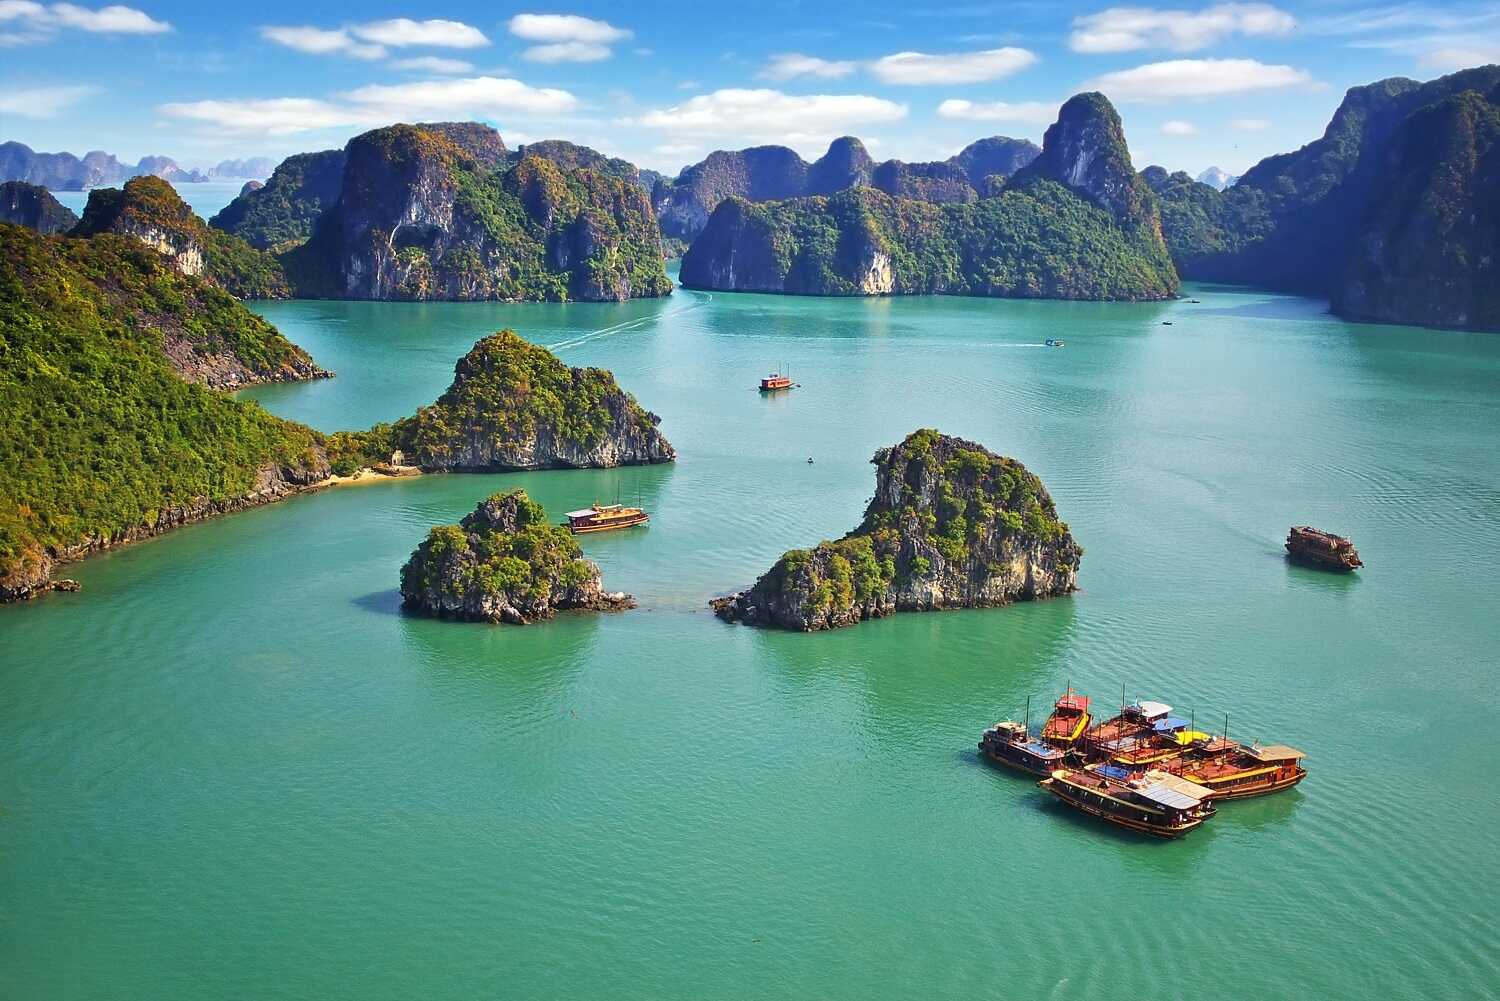 Du lịch Miền Bắc - Hạ Long - Tràng An khuyến mãi Vietnam Airlines